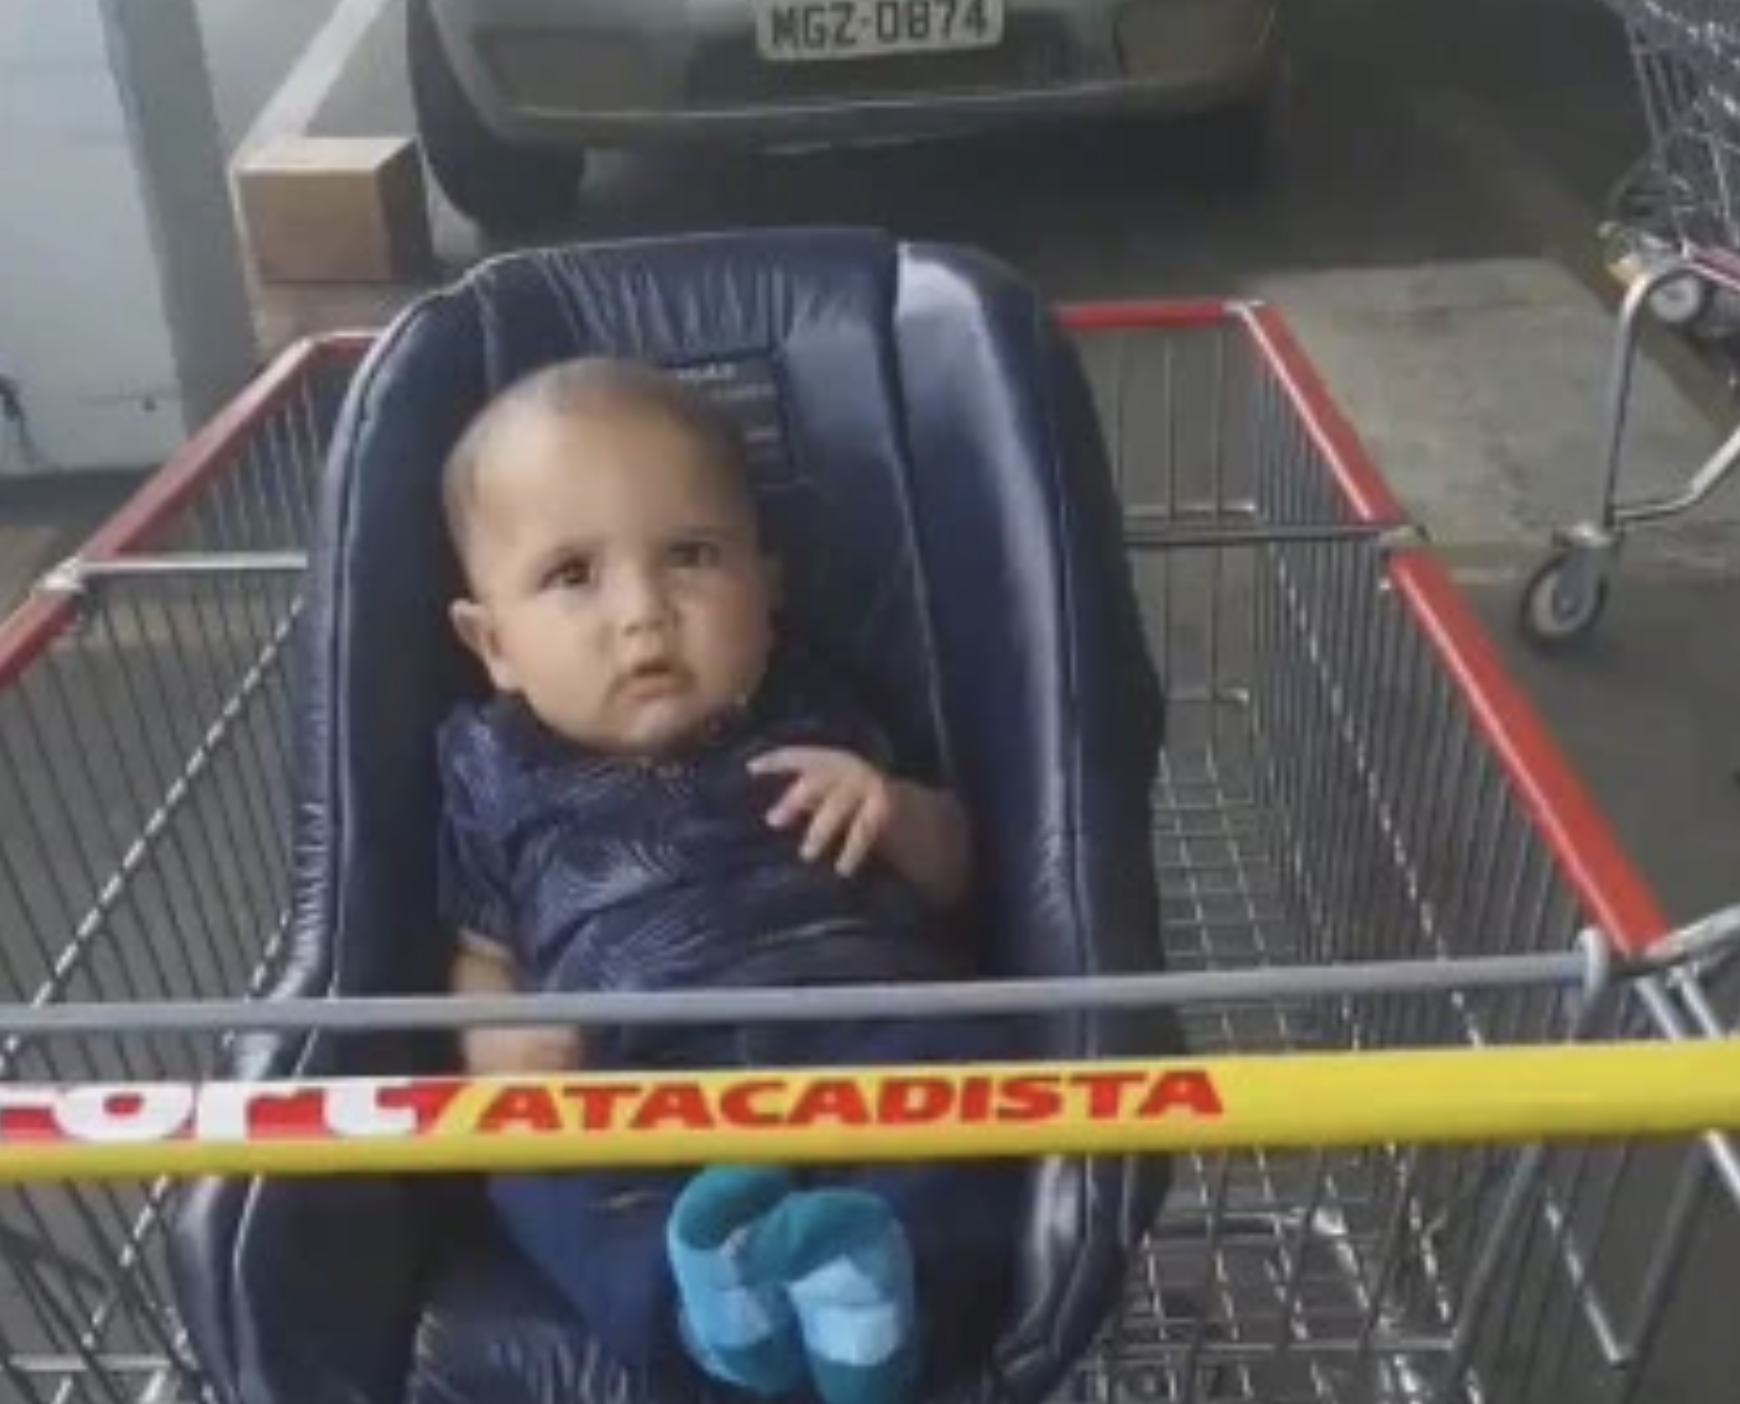 Illustratie bij: Ouders vergeten baby in supermarktkarretje en rijden zonder kind naar huis